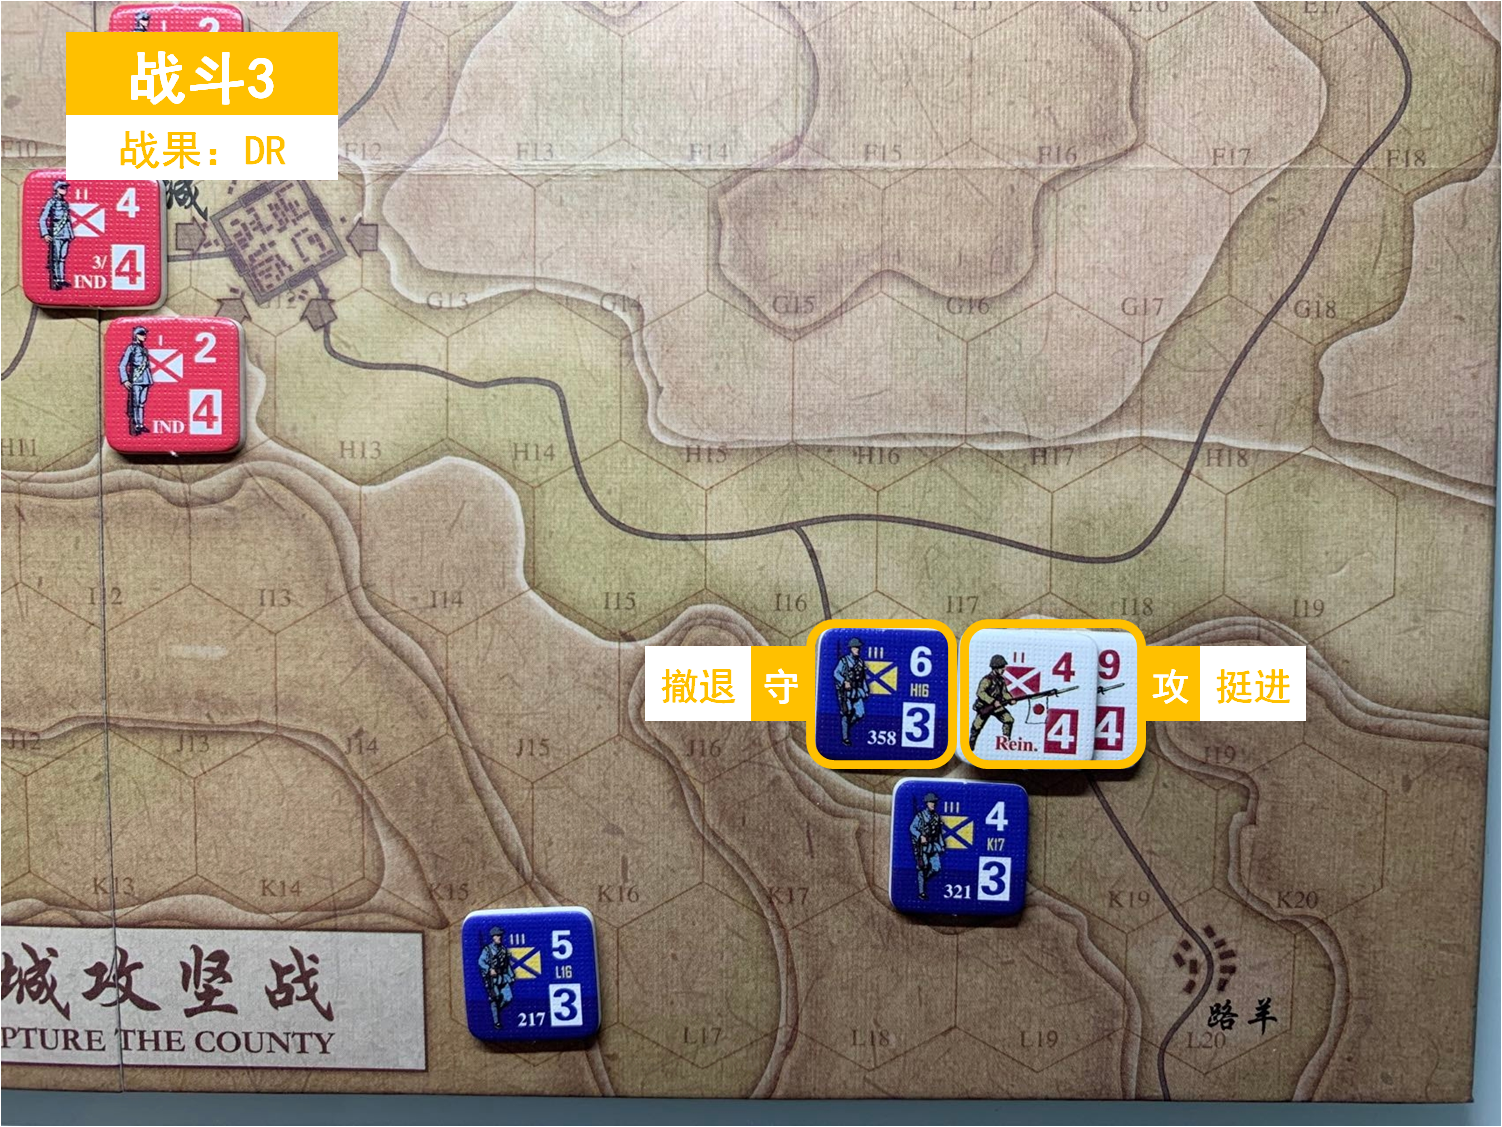 第一回合 日方战斗阶段 战斗3 战斗结果